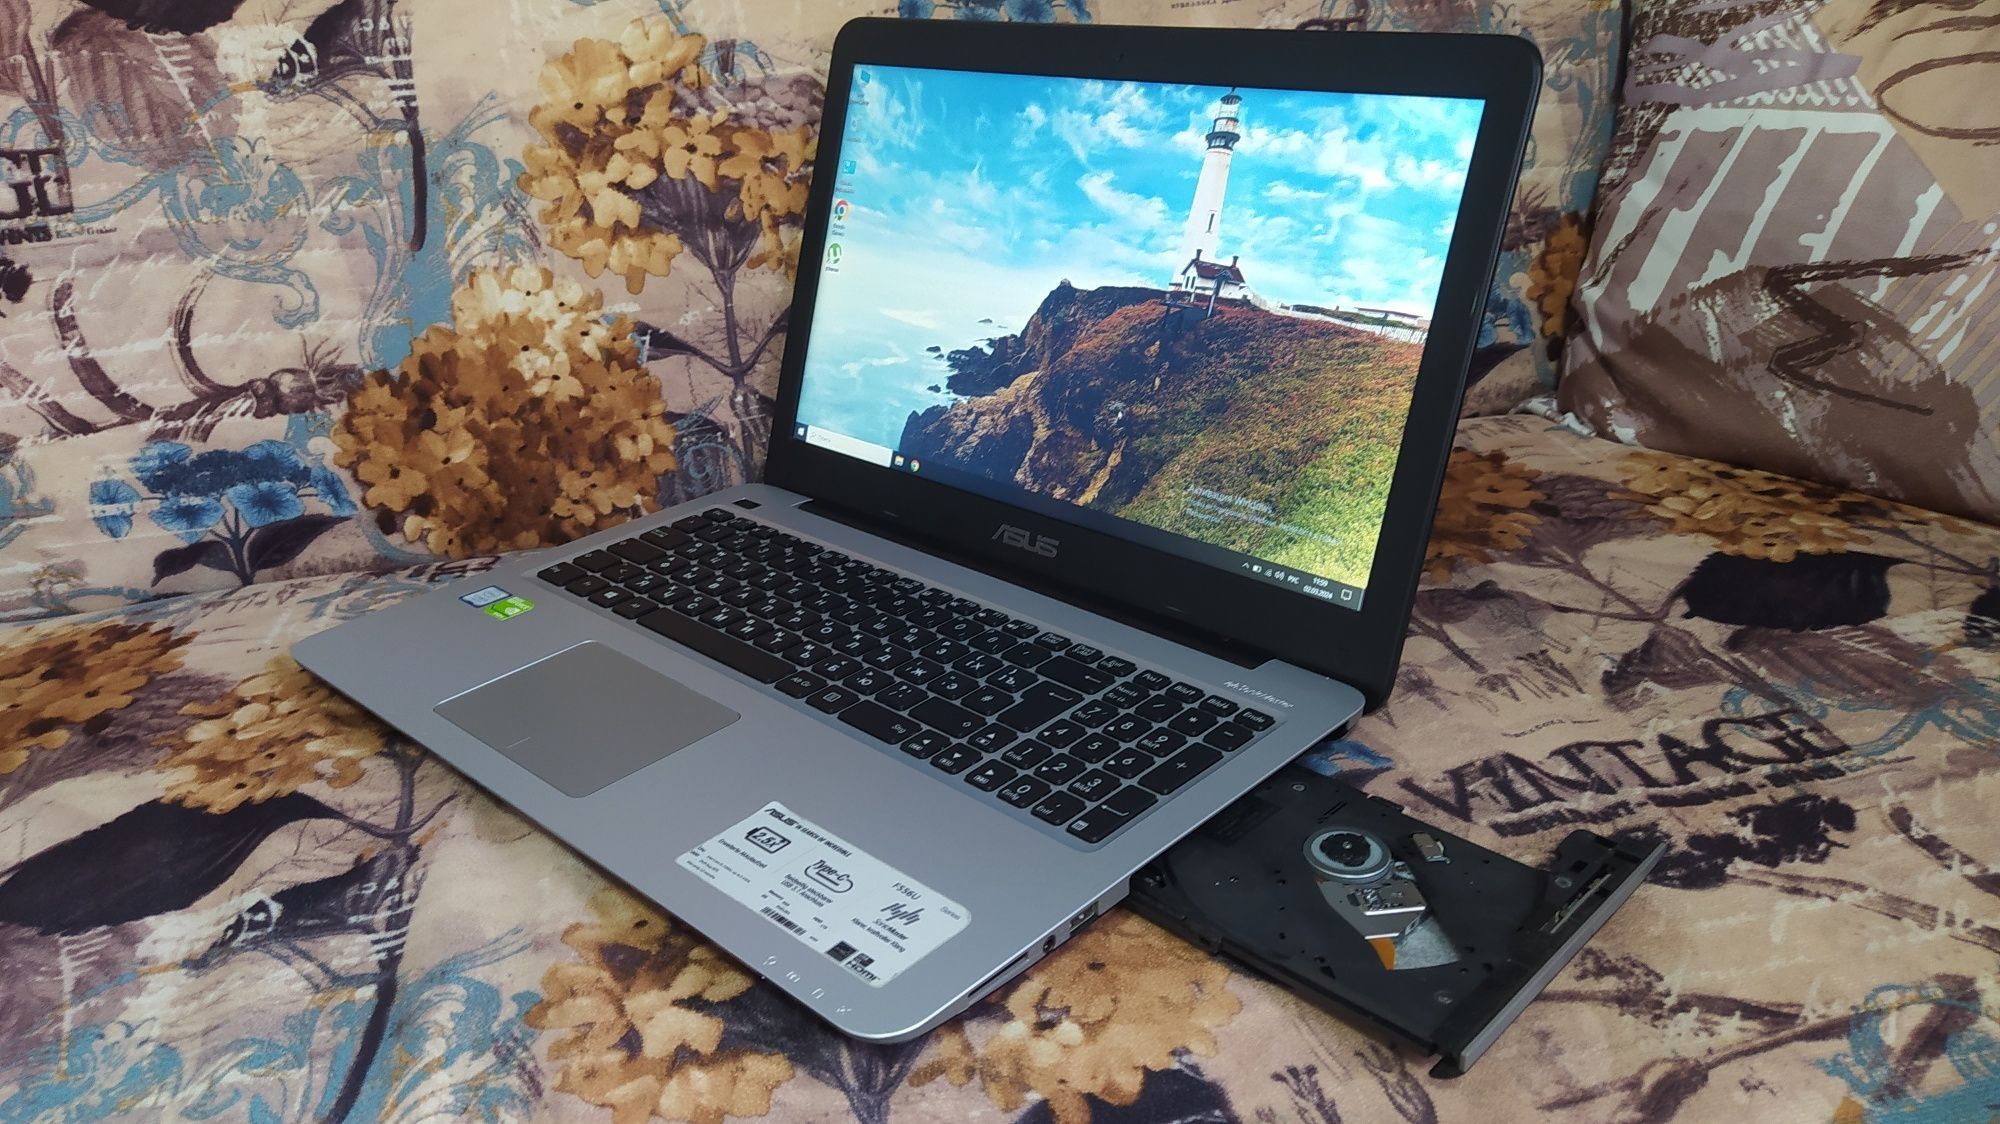 Laptop Gaming Asus X556 i7-7500U 8GB DDR4 Nvidia 940MX 2GB Windows 10